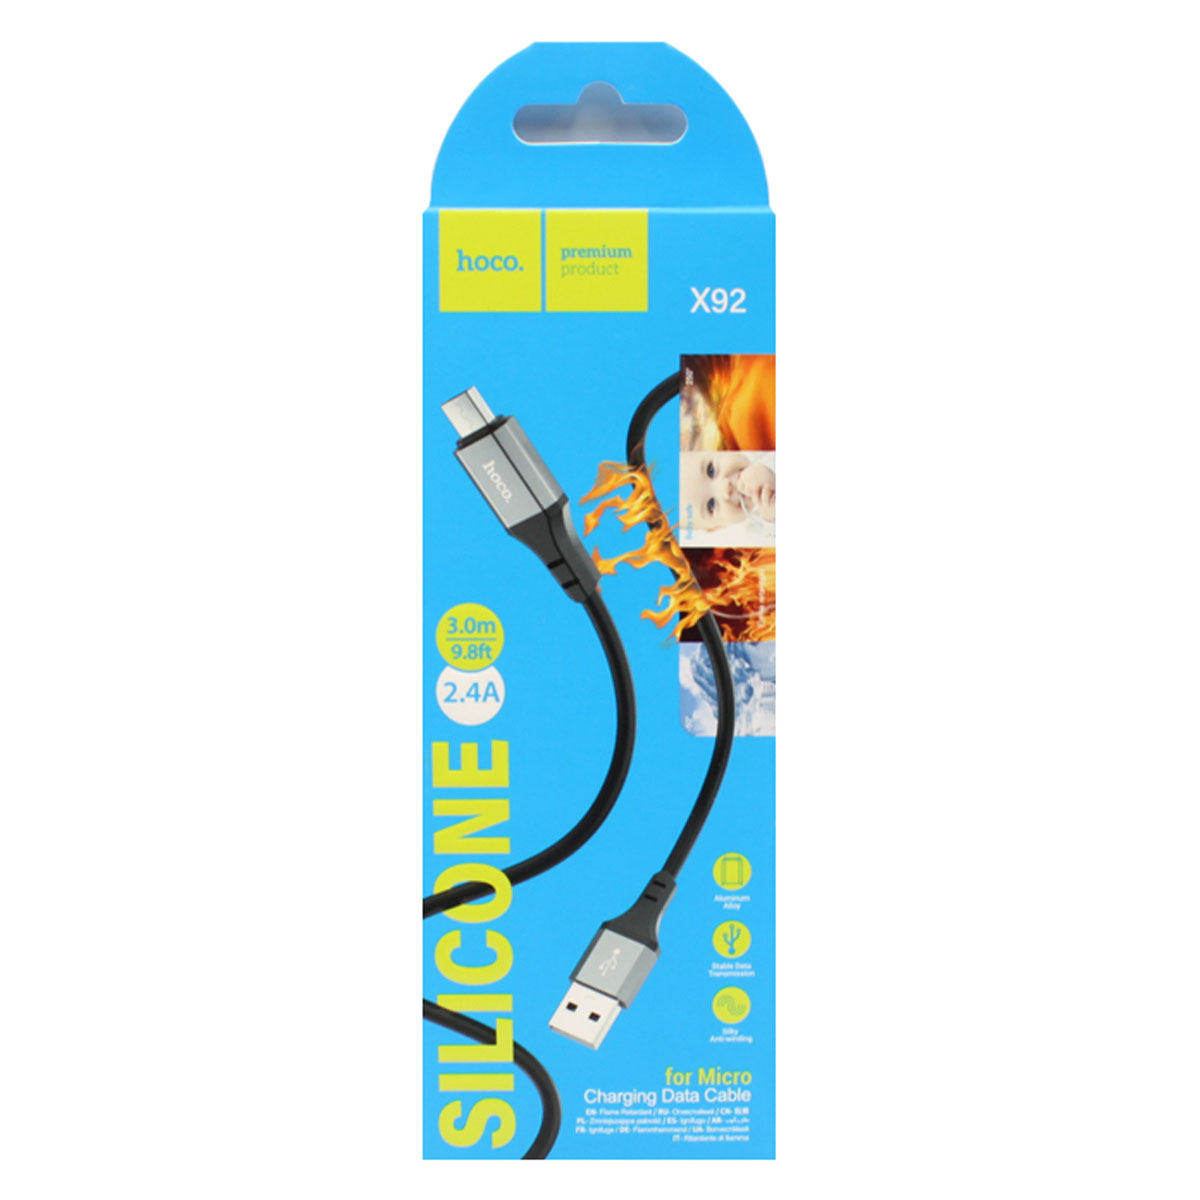 Кабель HOCO X92 Honest Micro USB, 2.4A, длина 3 метра, цвет черный